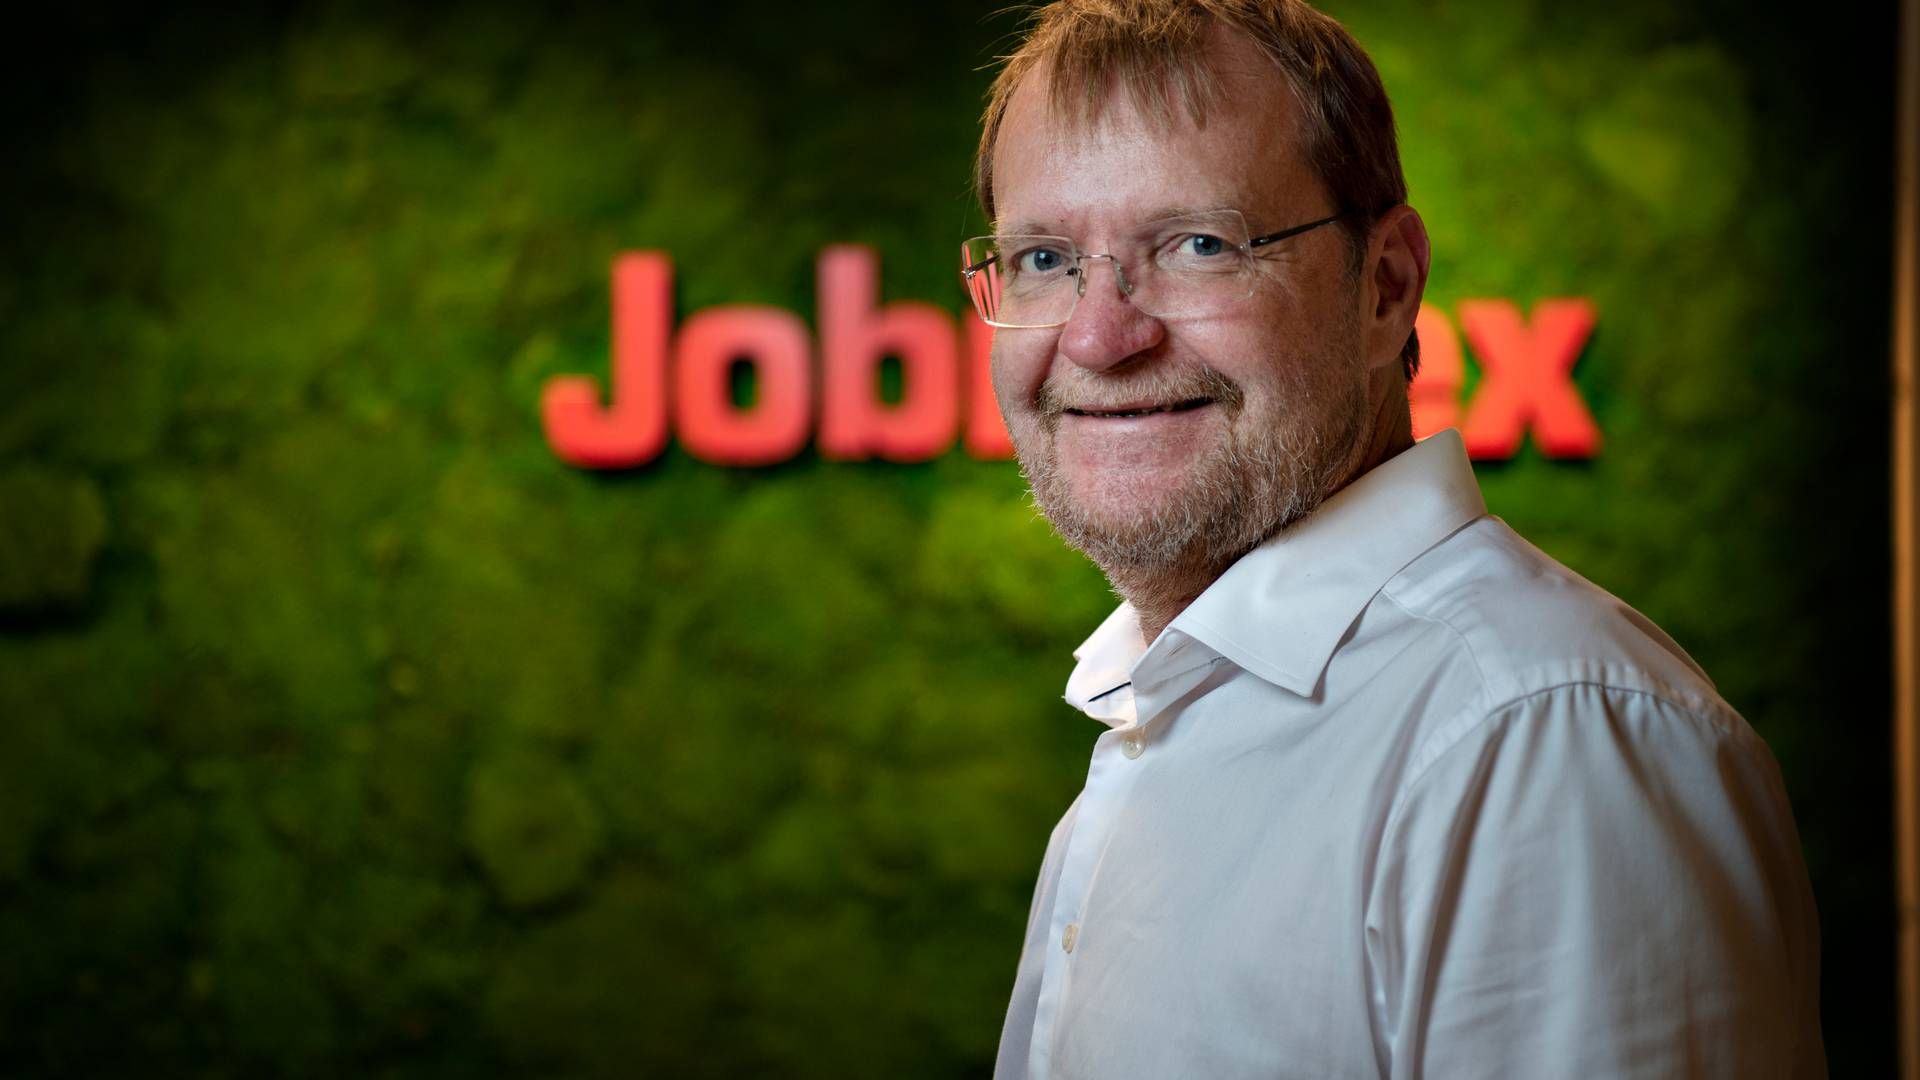 Adm. direktør og stifter Kåre Danielsen ejer i forvejen over 90 pct. af Jobindes. | Foto: Brian Karmark